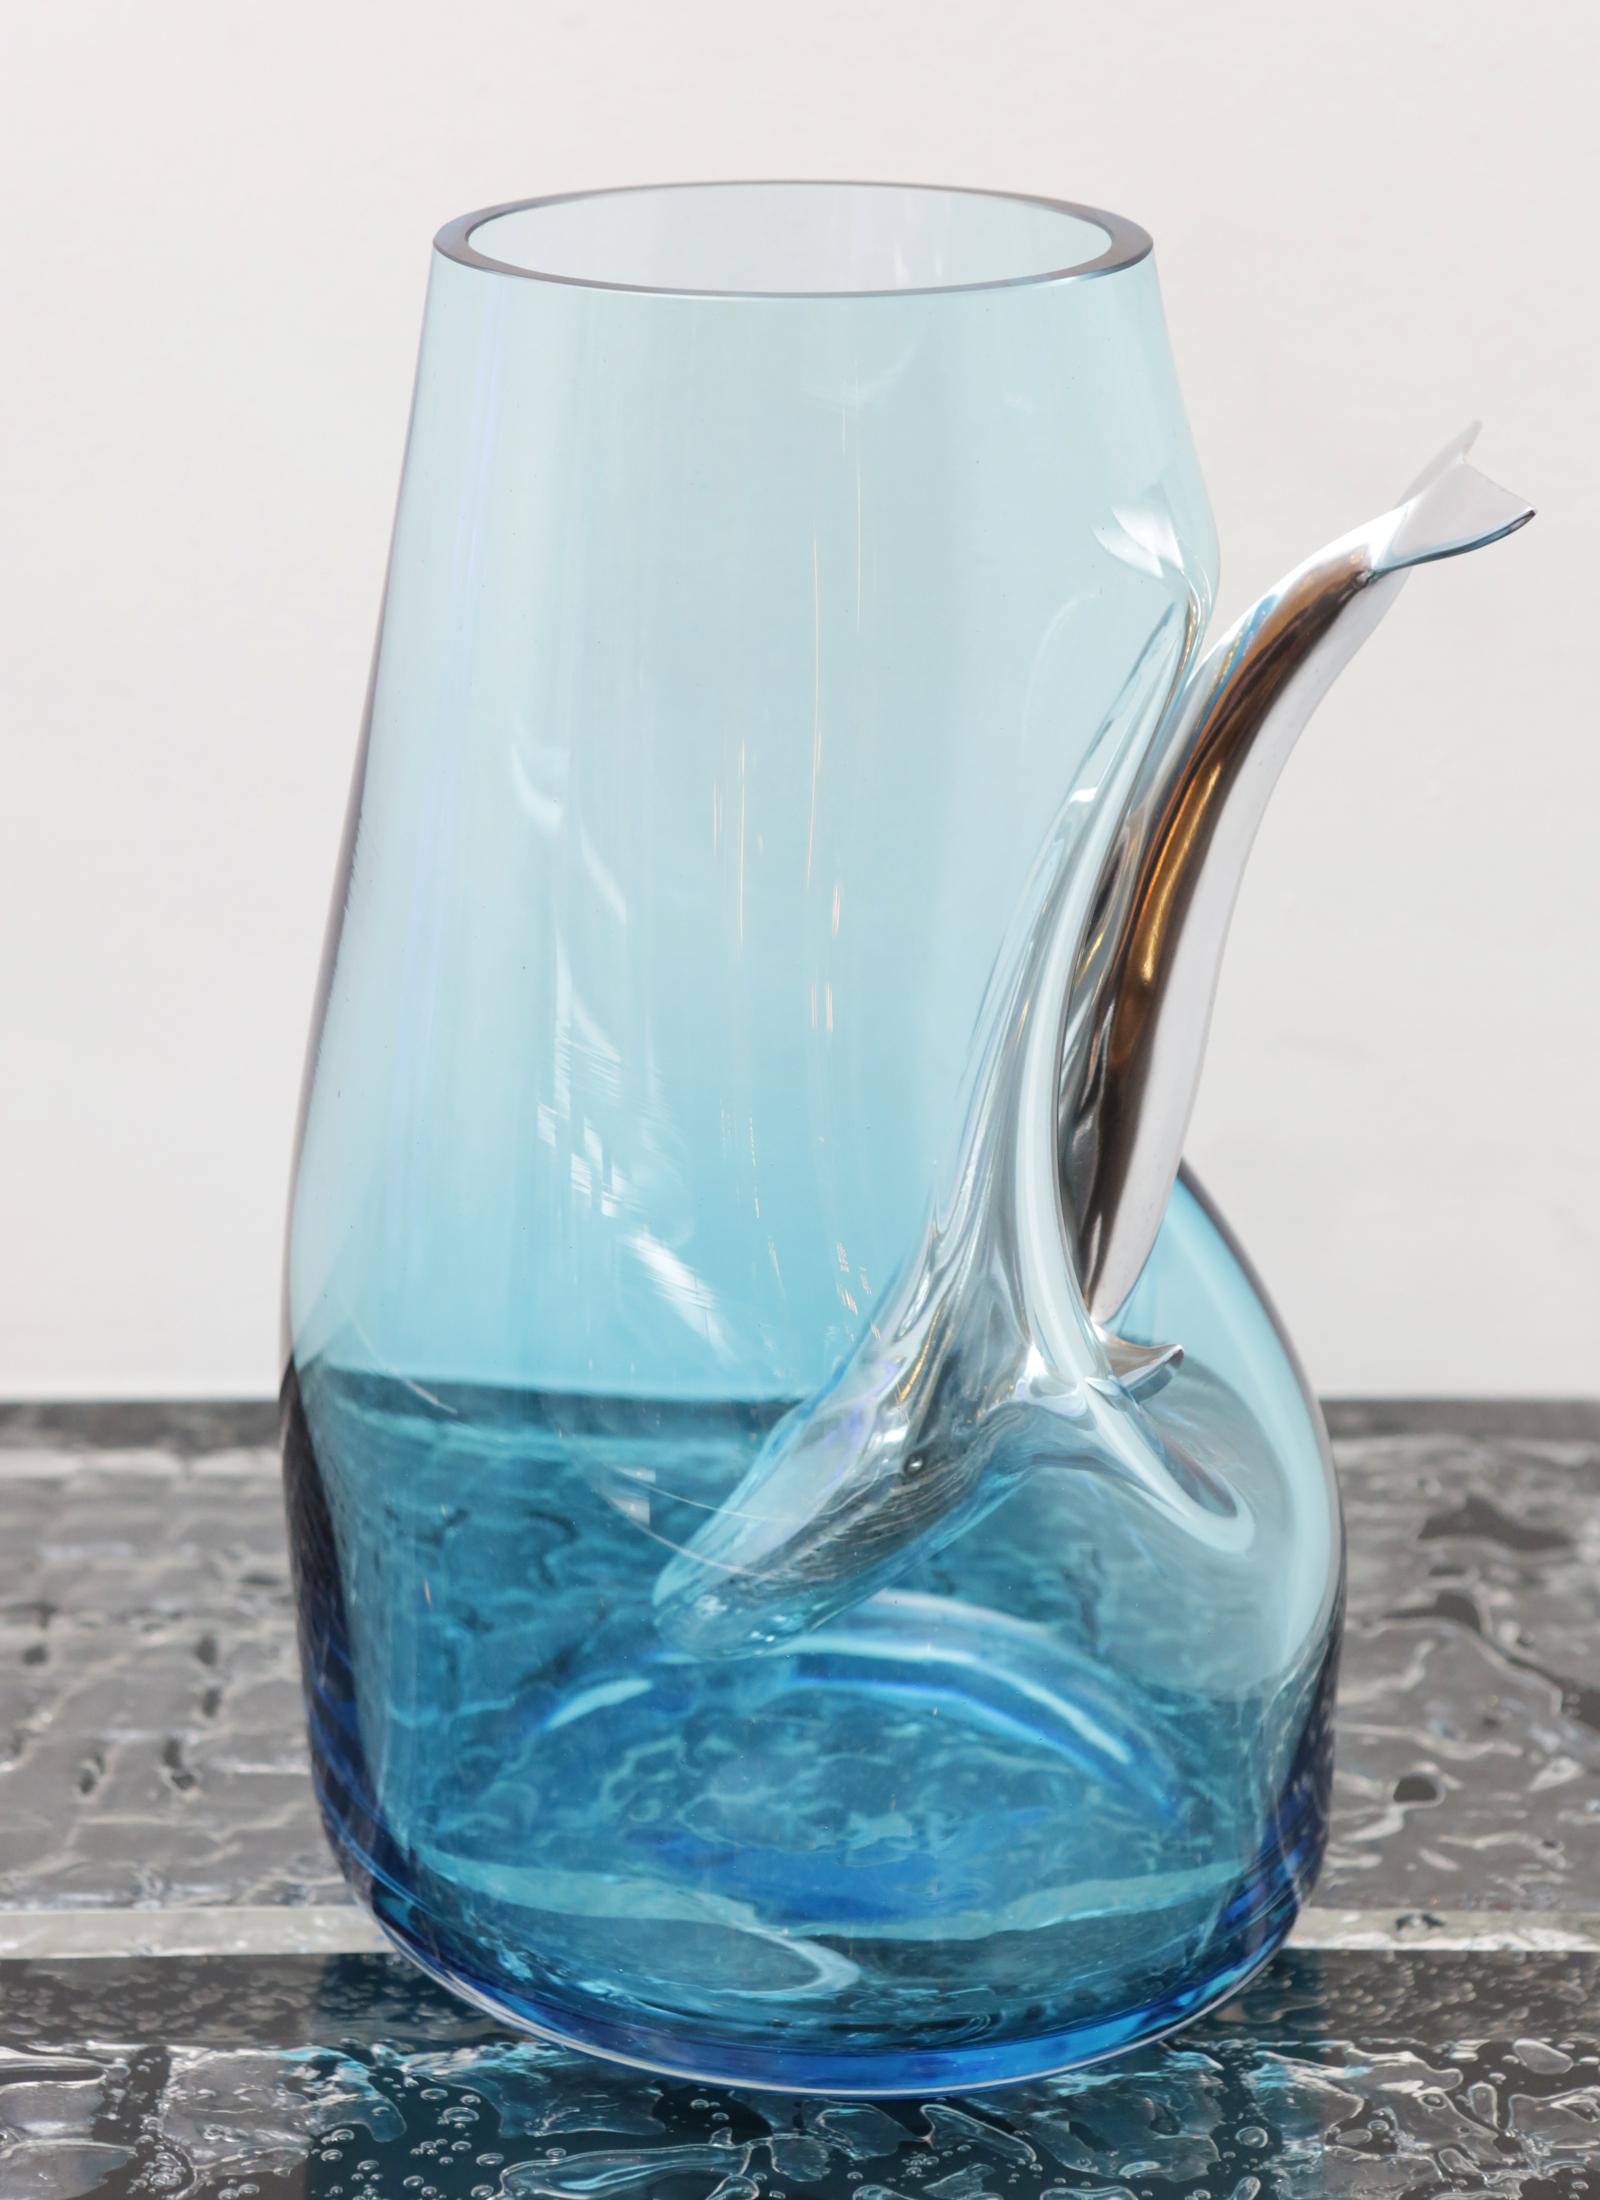 Vase Tauchen Wal blau in mundgeblasenem blau gemacht
glas mit einem tauchenden Wal aus poliertem Aluminium durch
das Glas.
 